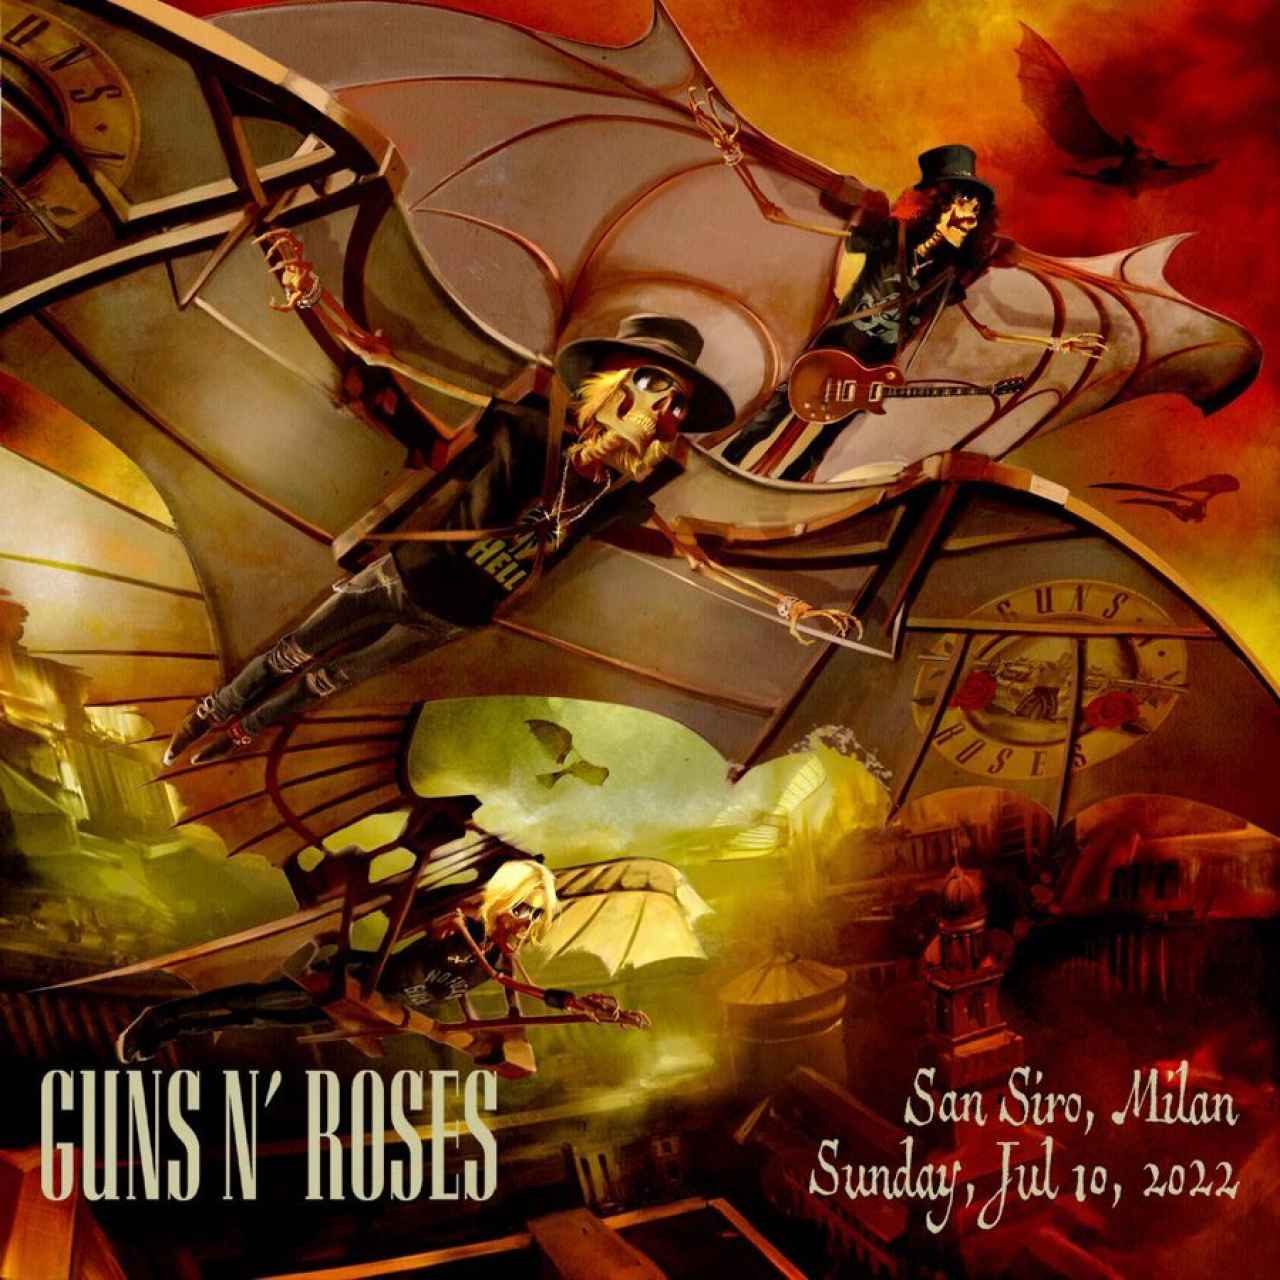 Cartel para el concierto de los Guns N' Roses Milán.